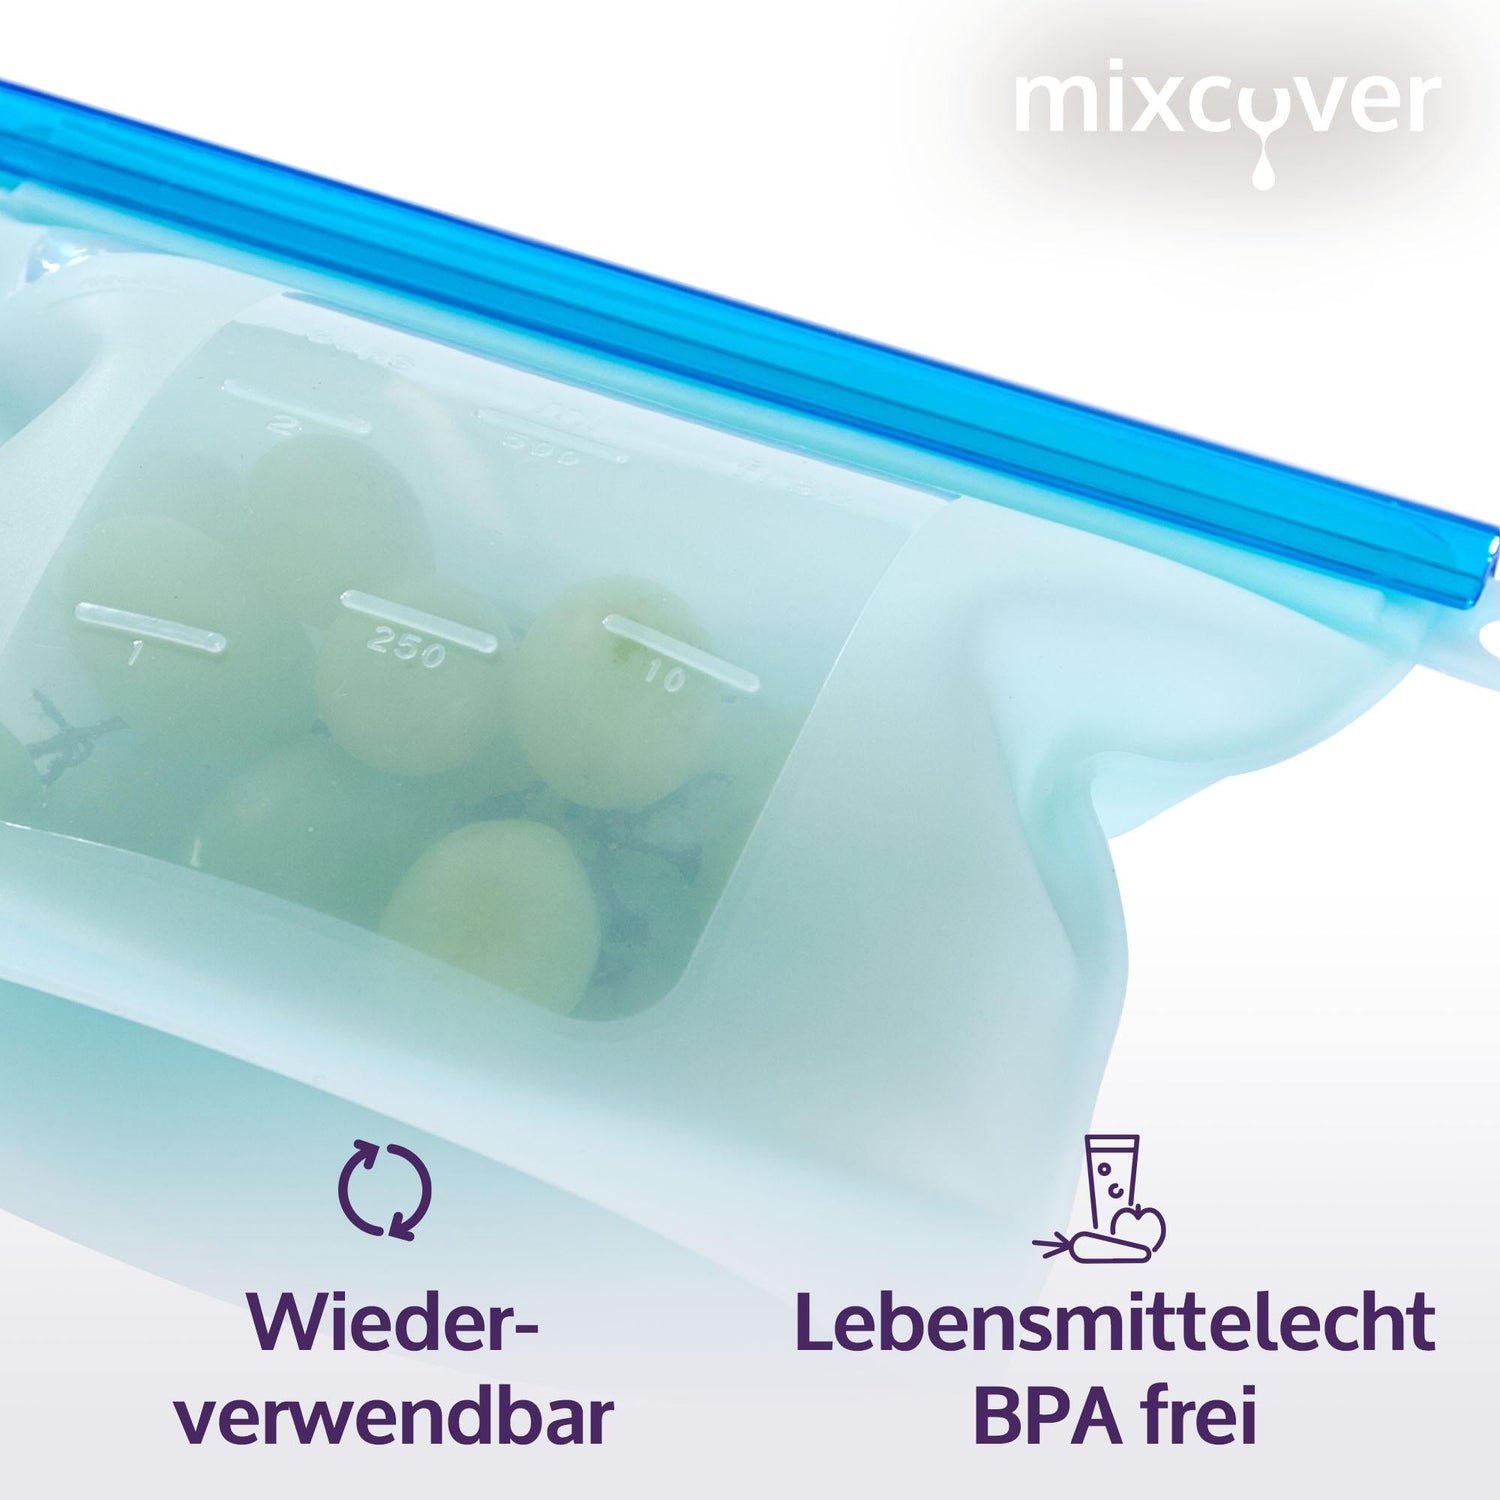 mixcover wiederverwendbarer Frischhaltebeutel aus Silikon mit Verschluss, auslaufsicher, nachhaltig, BPA-frei, 500 ml - Mixcover - Mixcover